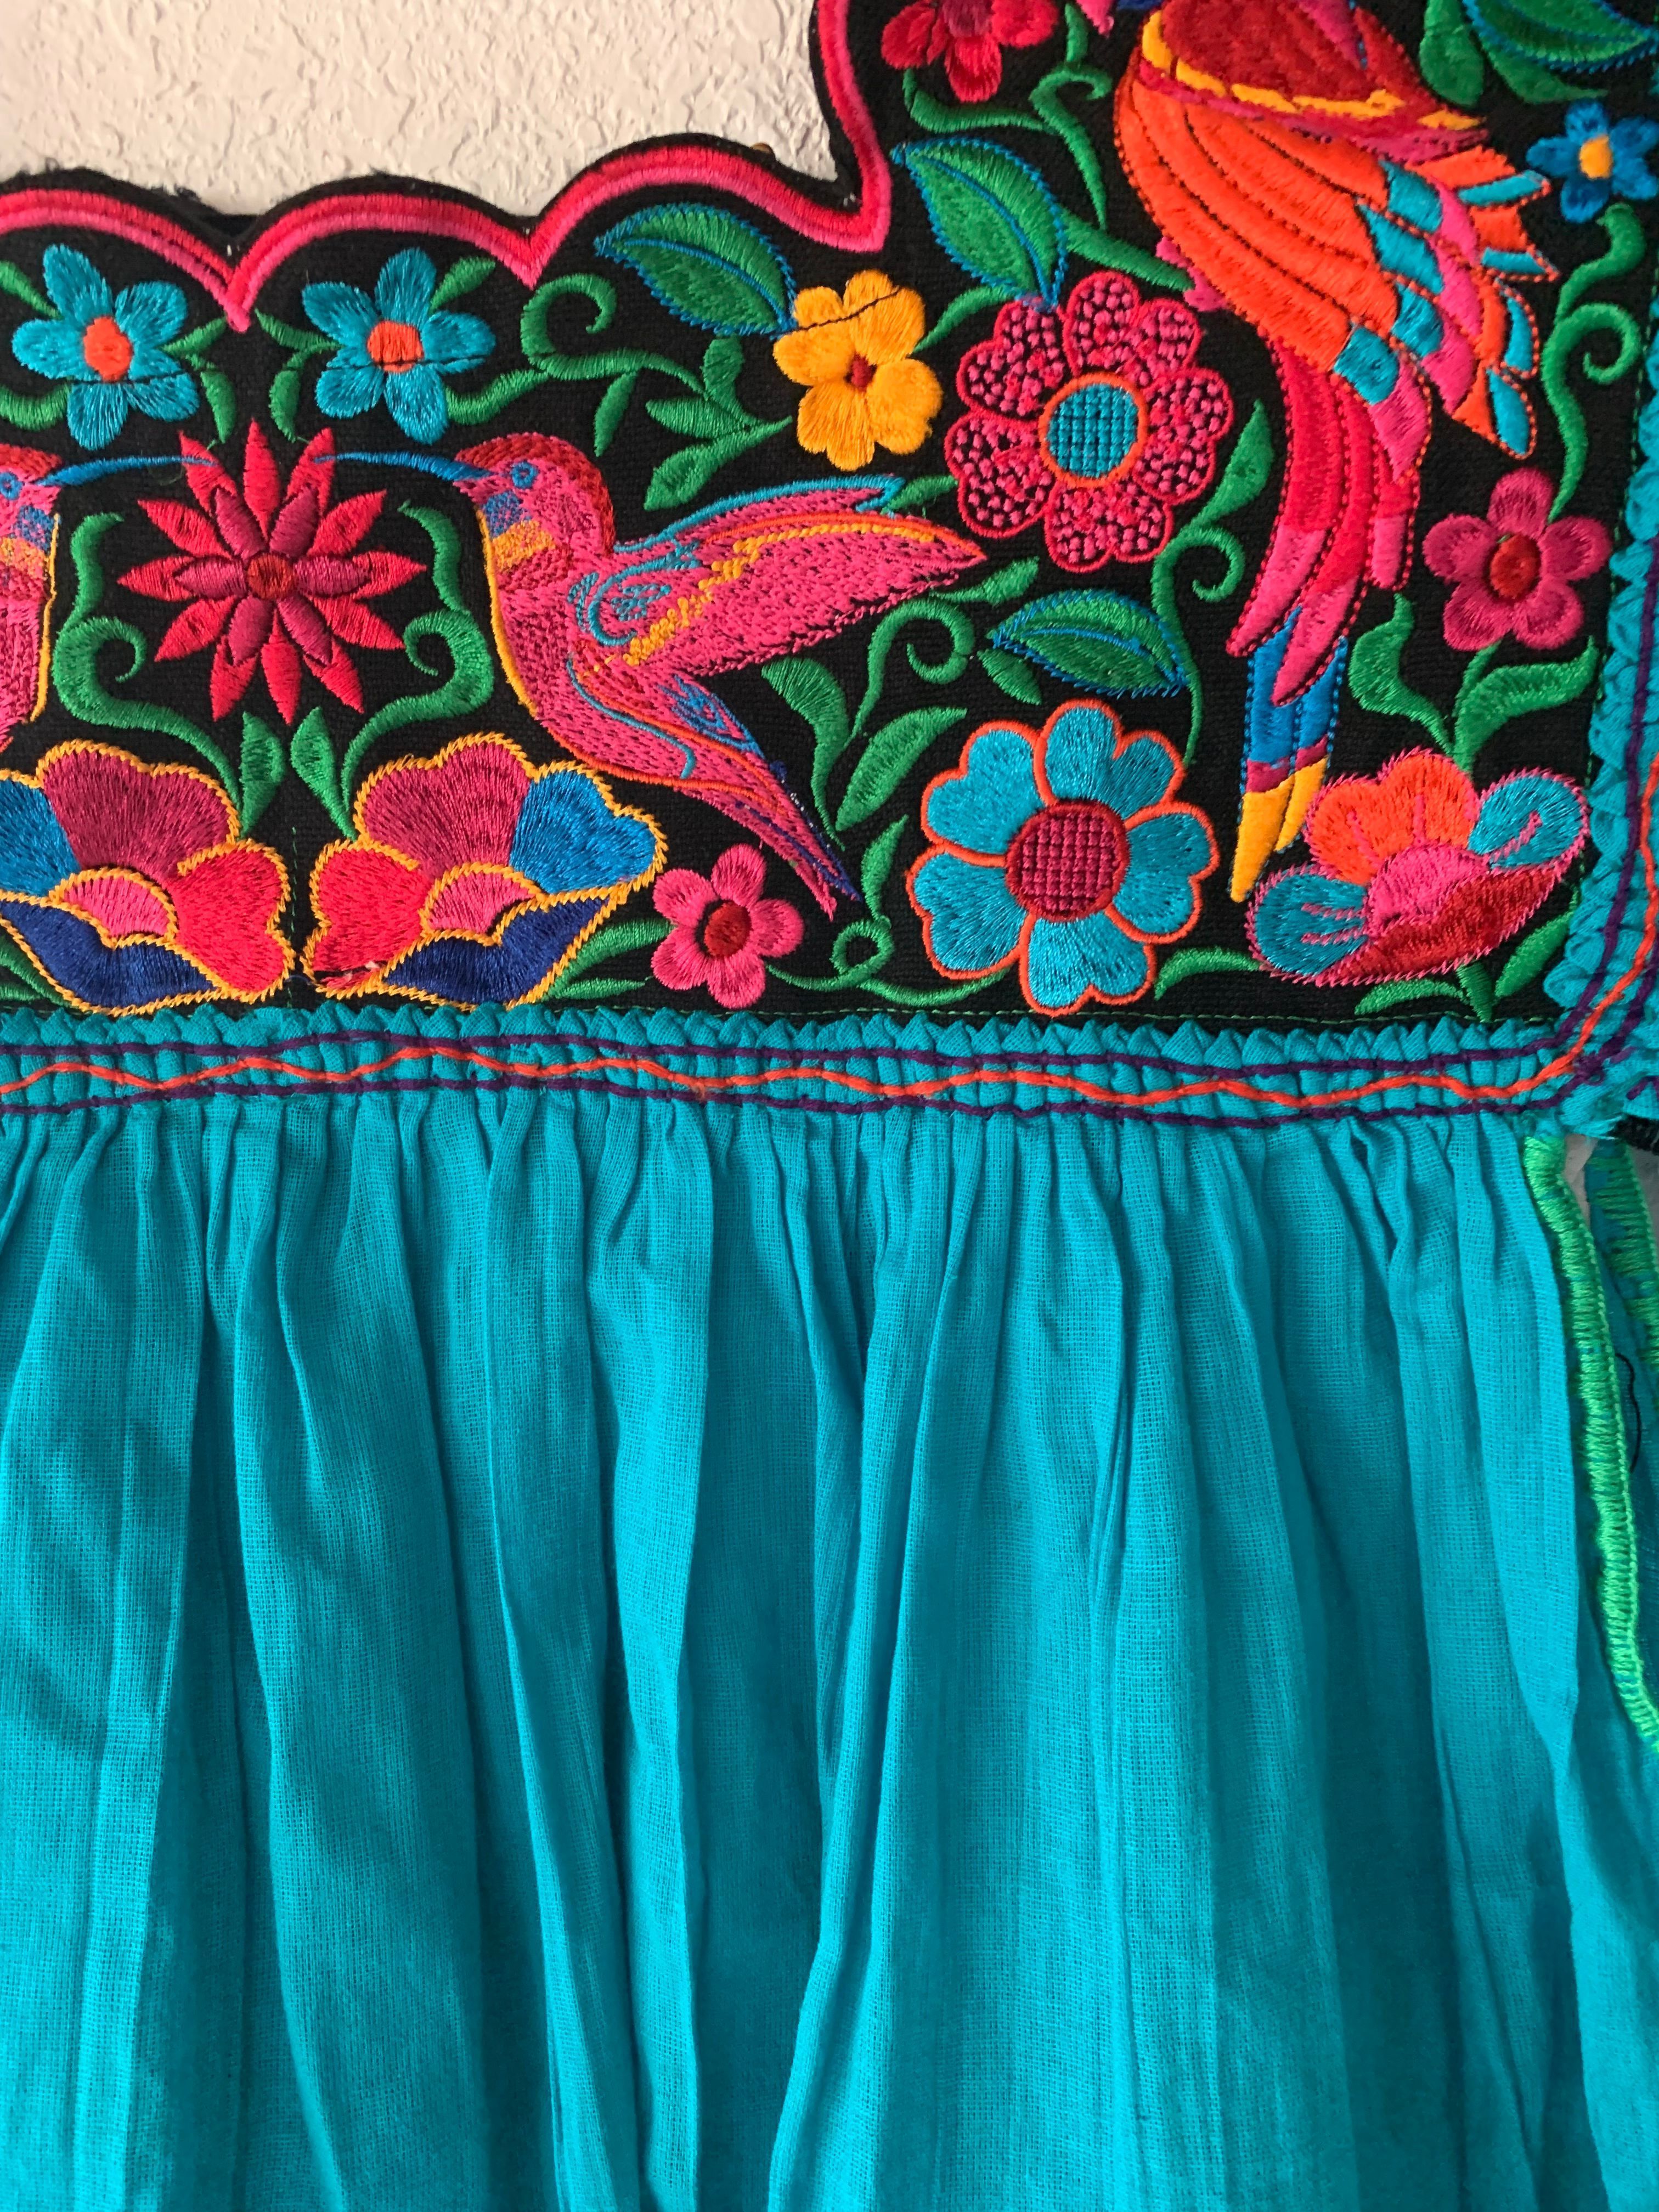 NUEVO vestido de niña de flores y faja extra ancha -  México